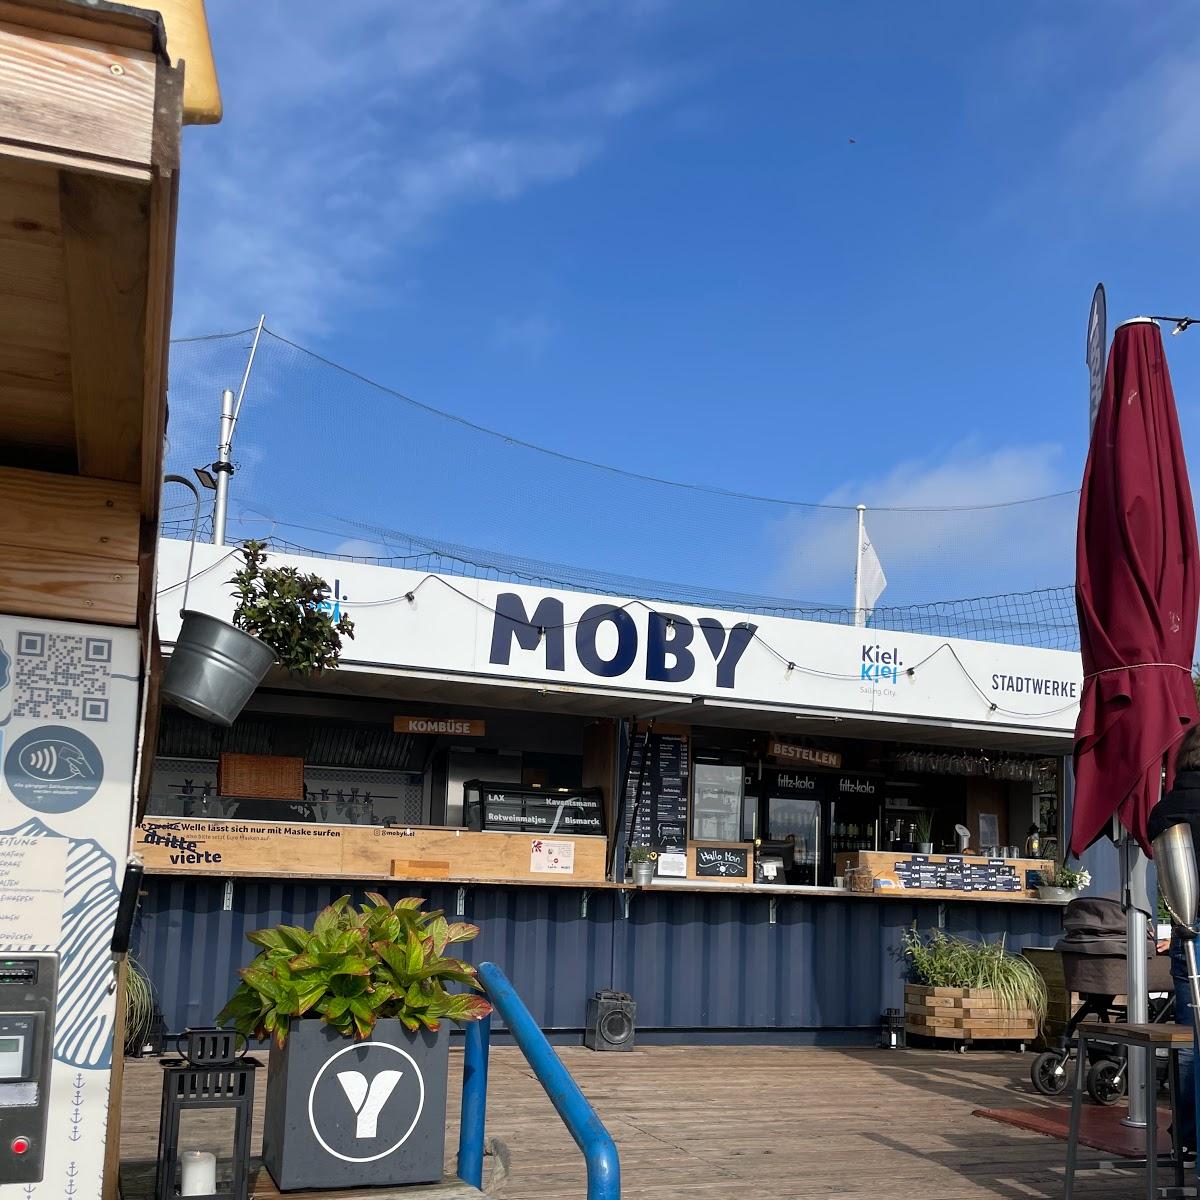 Restaurant "MOBY" in Kiel